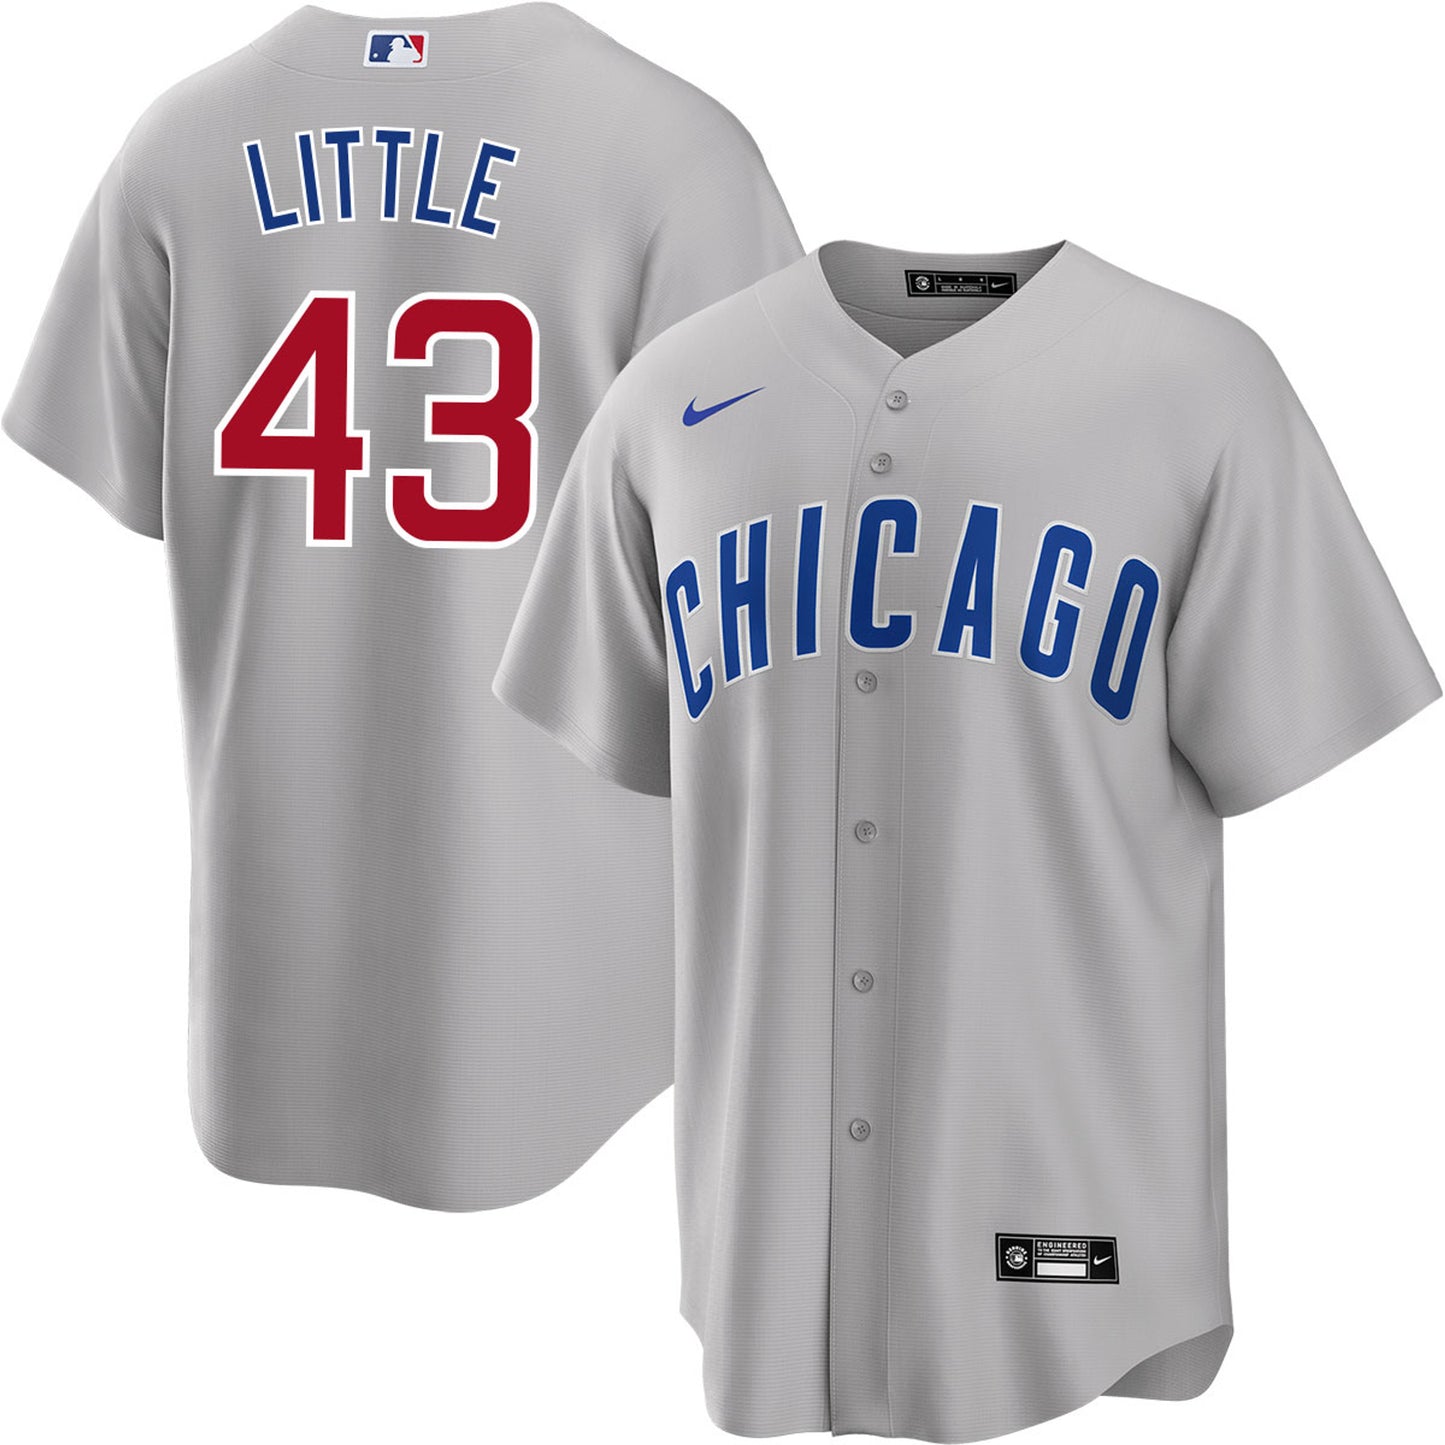 Men's  Chicago Cubs Luke Little Player Jersey